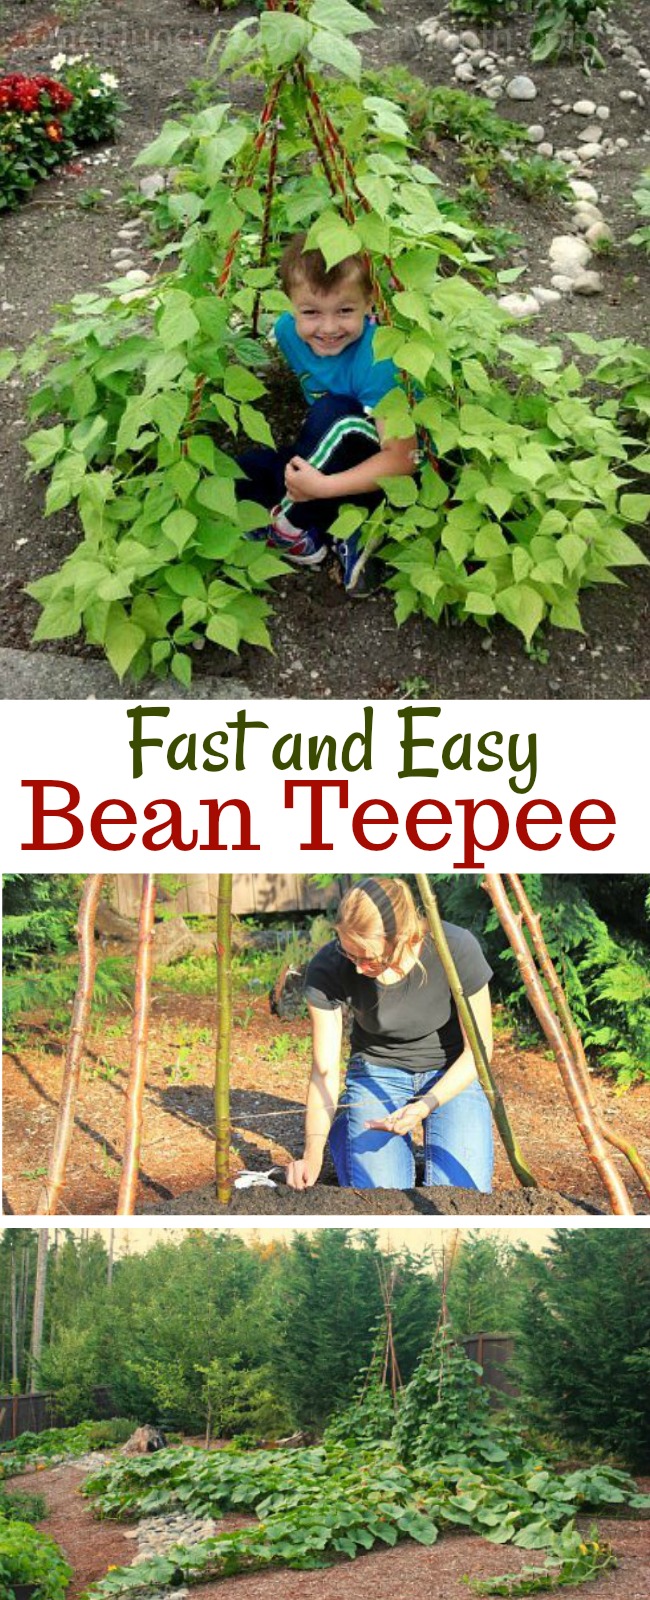 How to Make a Bean Teepee